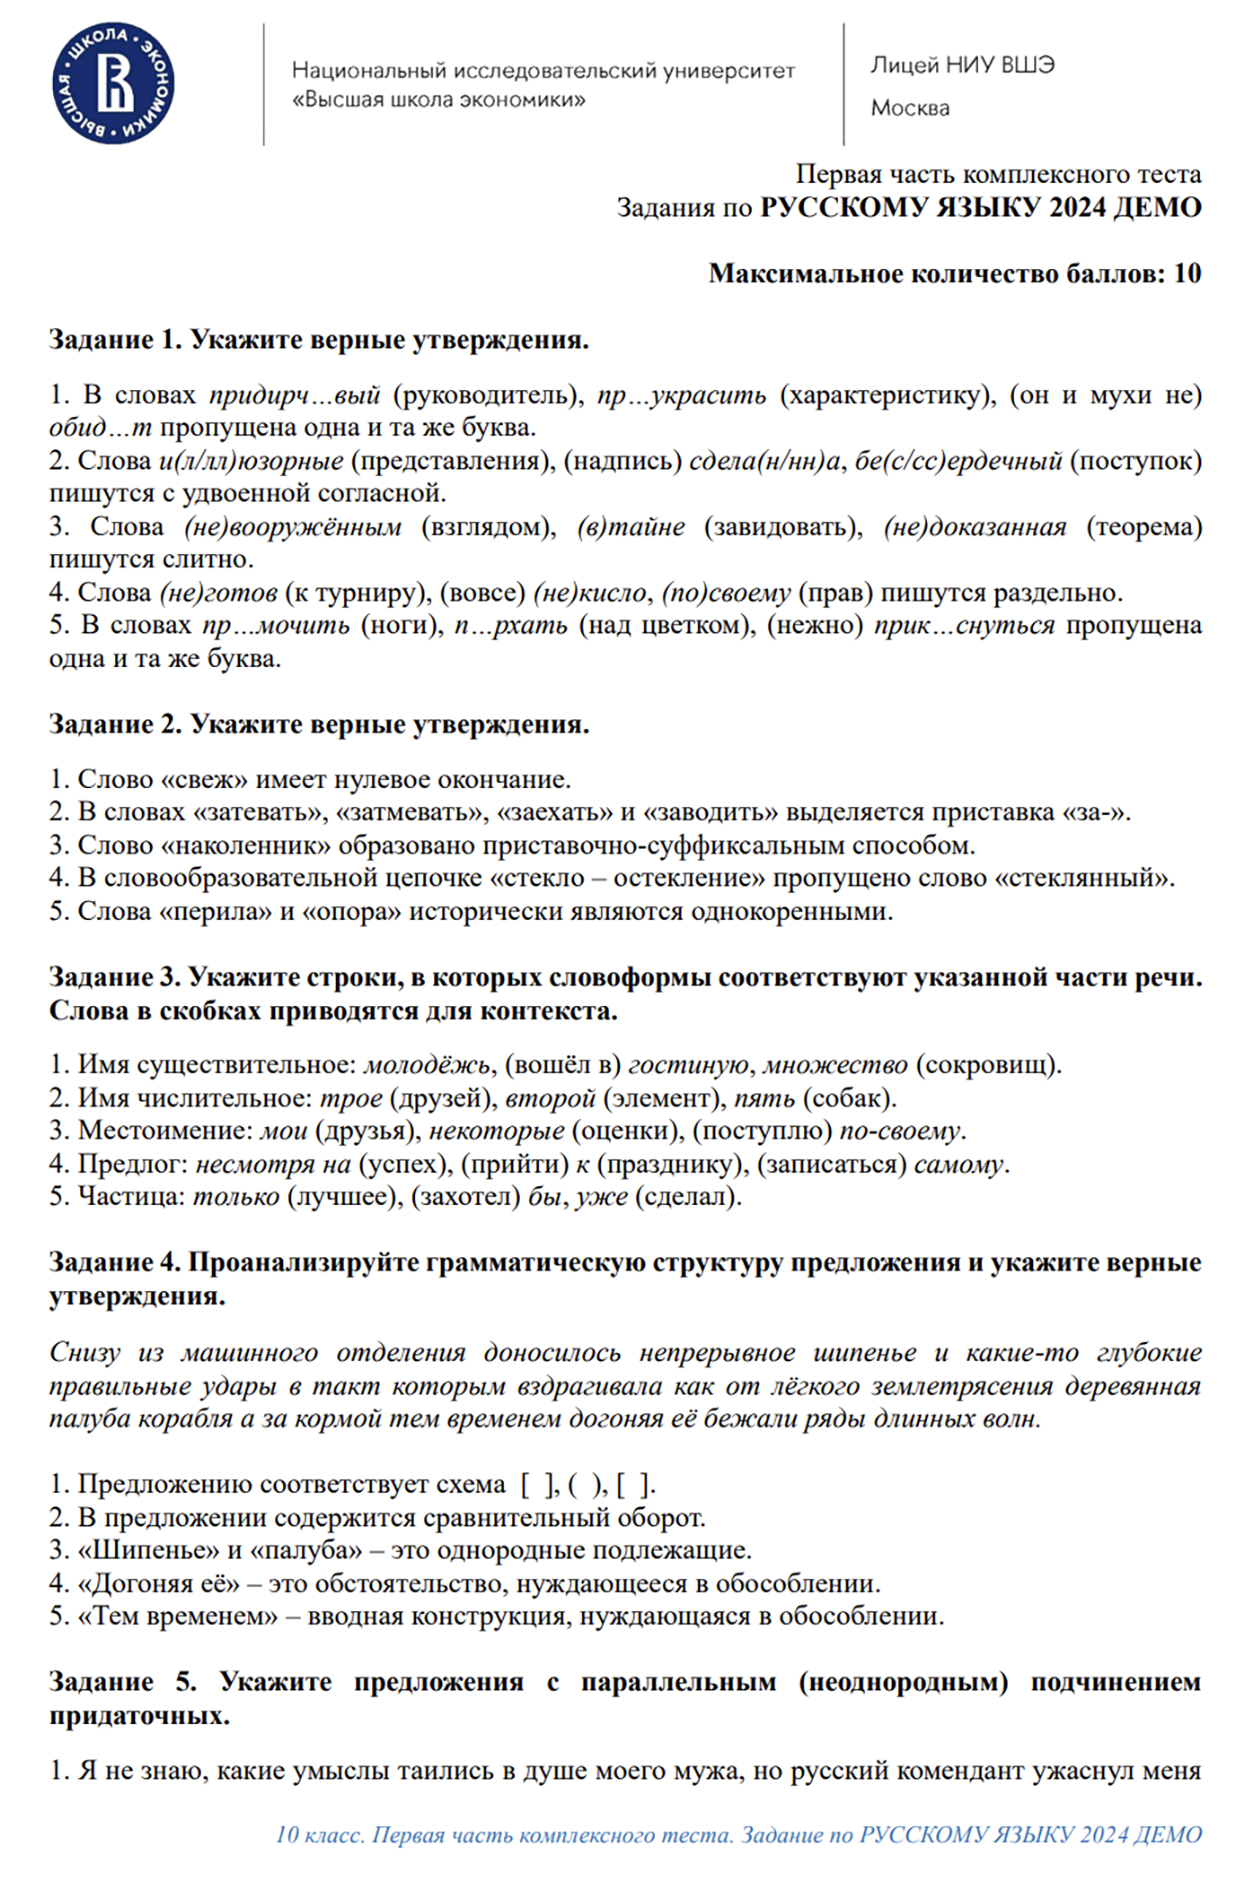 Примеры вопросов из теста по русскому языку для 10 класса. Источник: сайт лицея НИУ ВШЭ